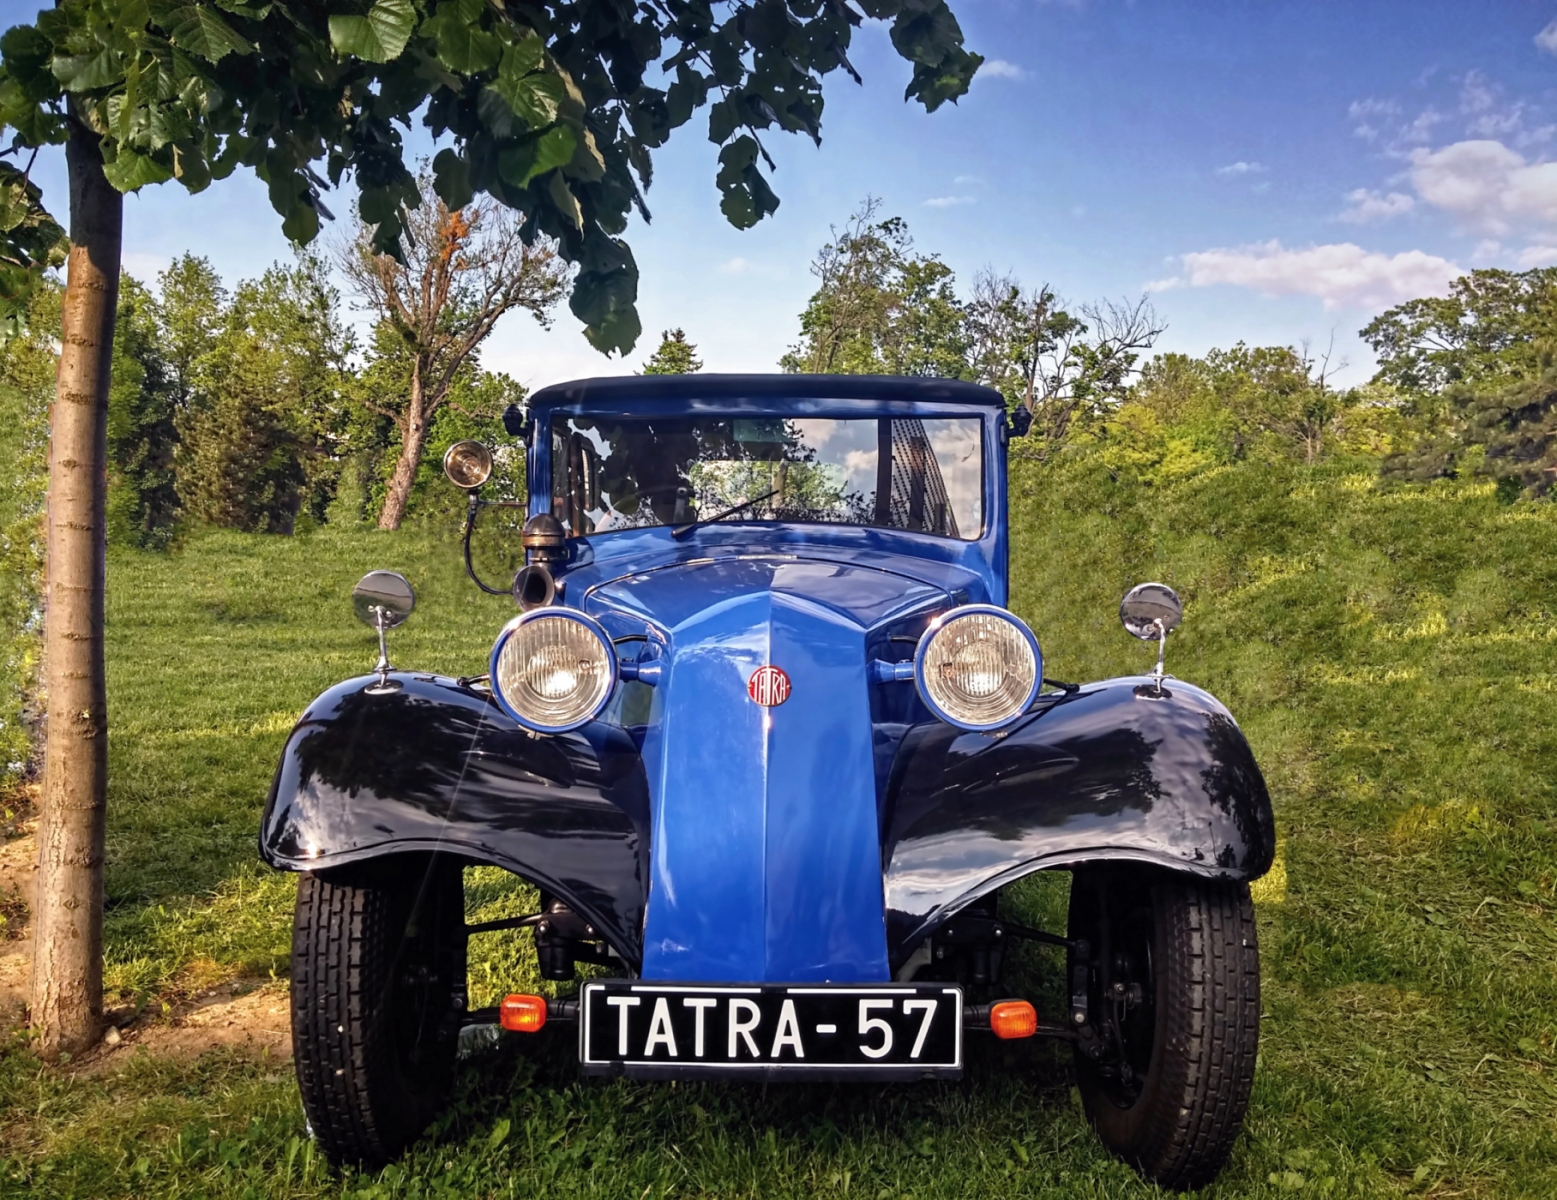 Skoro veterán Tatra - zasazen v přírodě ....